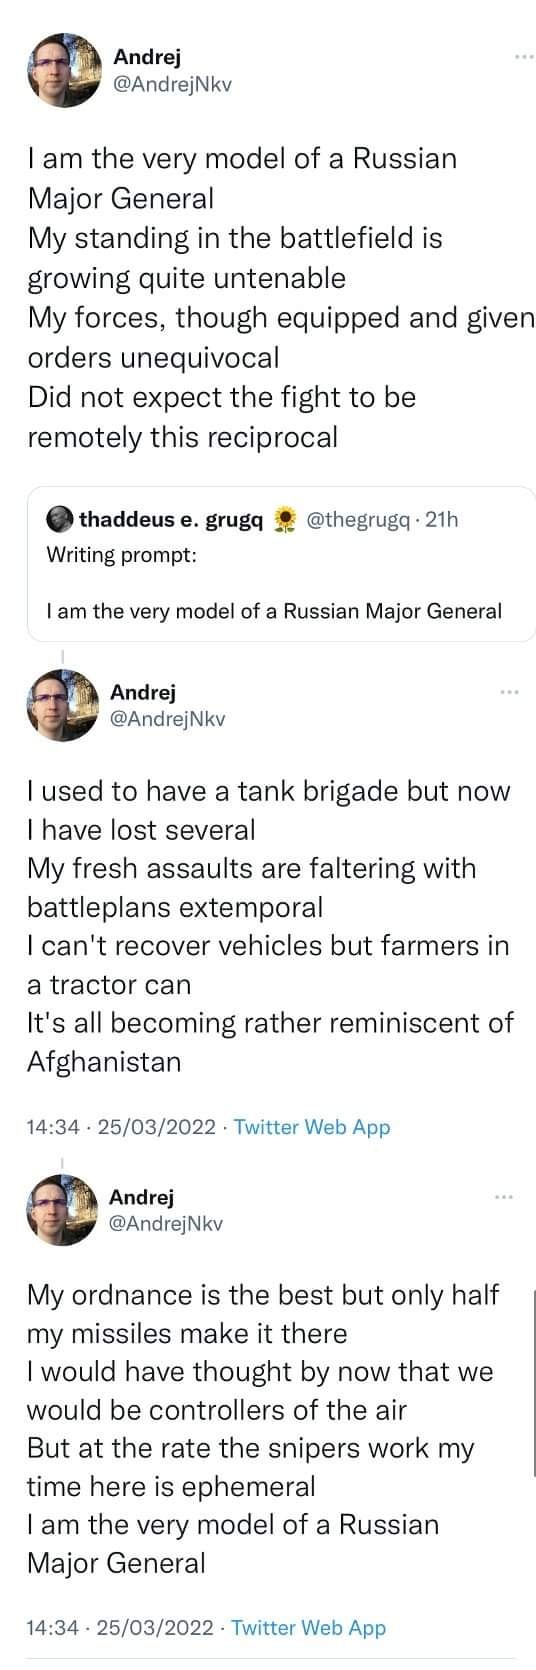 Russian Major General.jpg